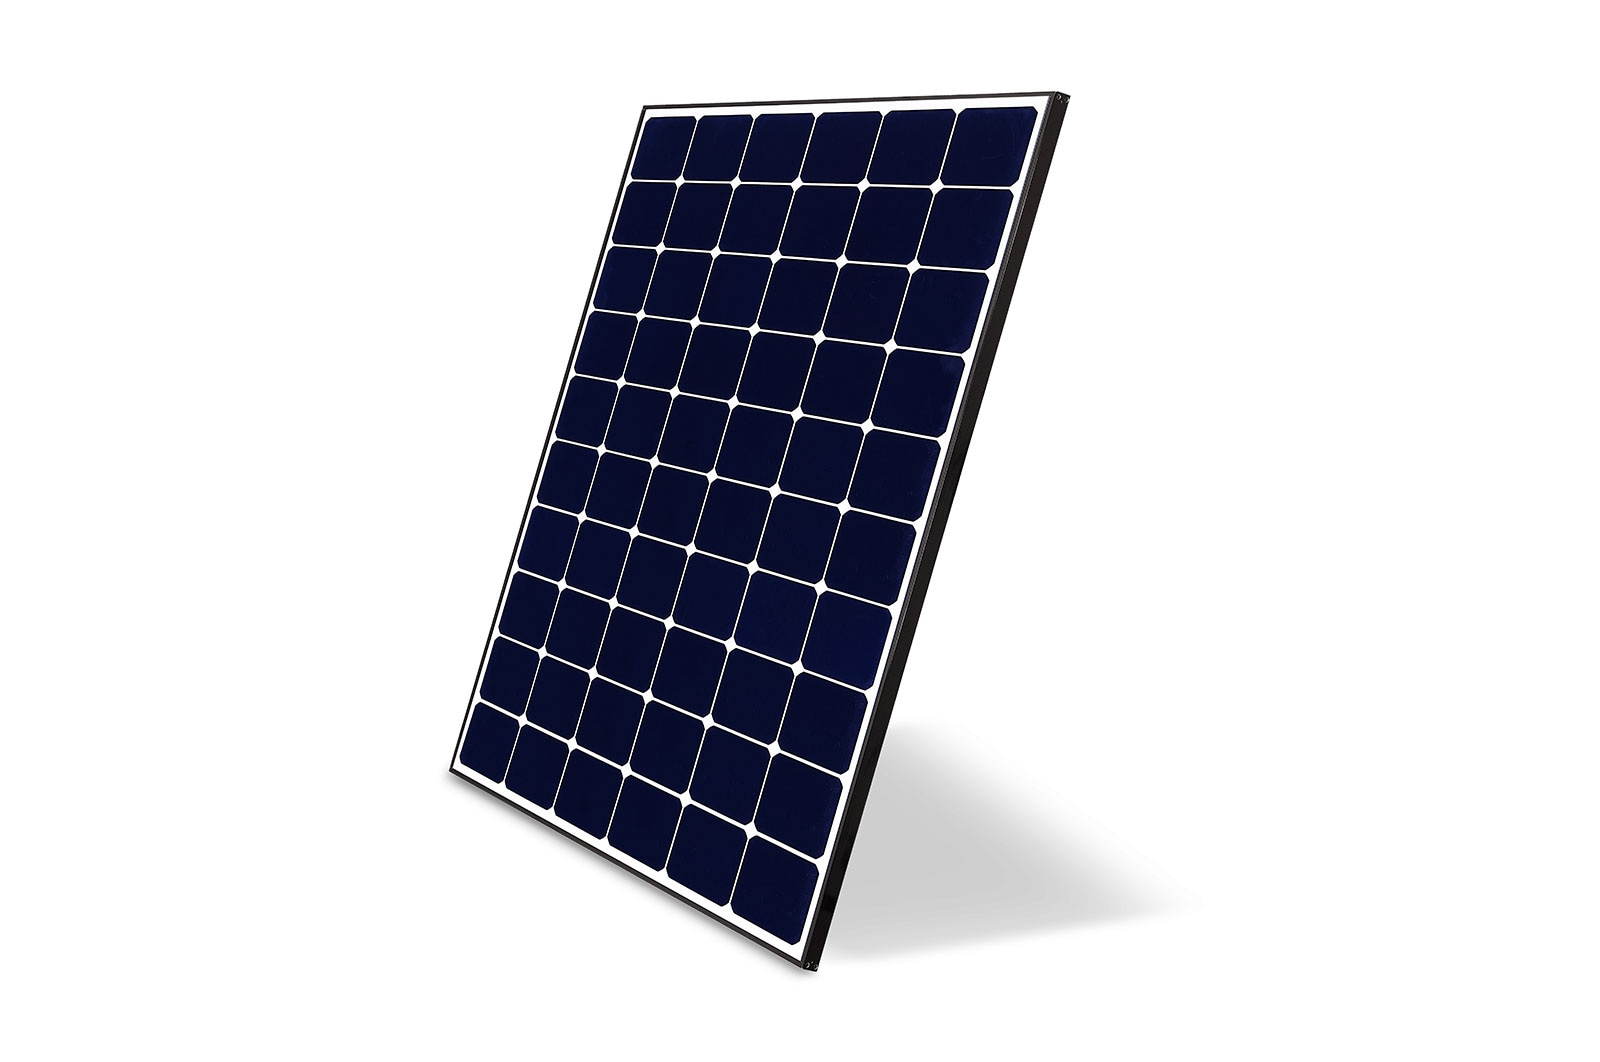 LG370Q1C-V5 NeON ® R Solar Panel | LG US Solar